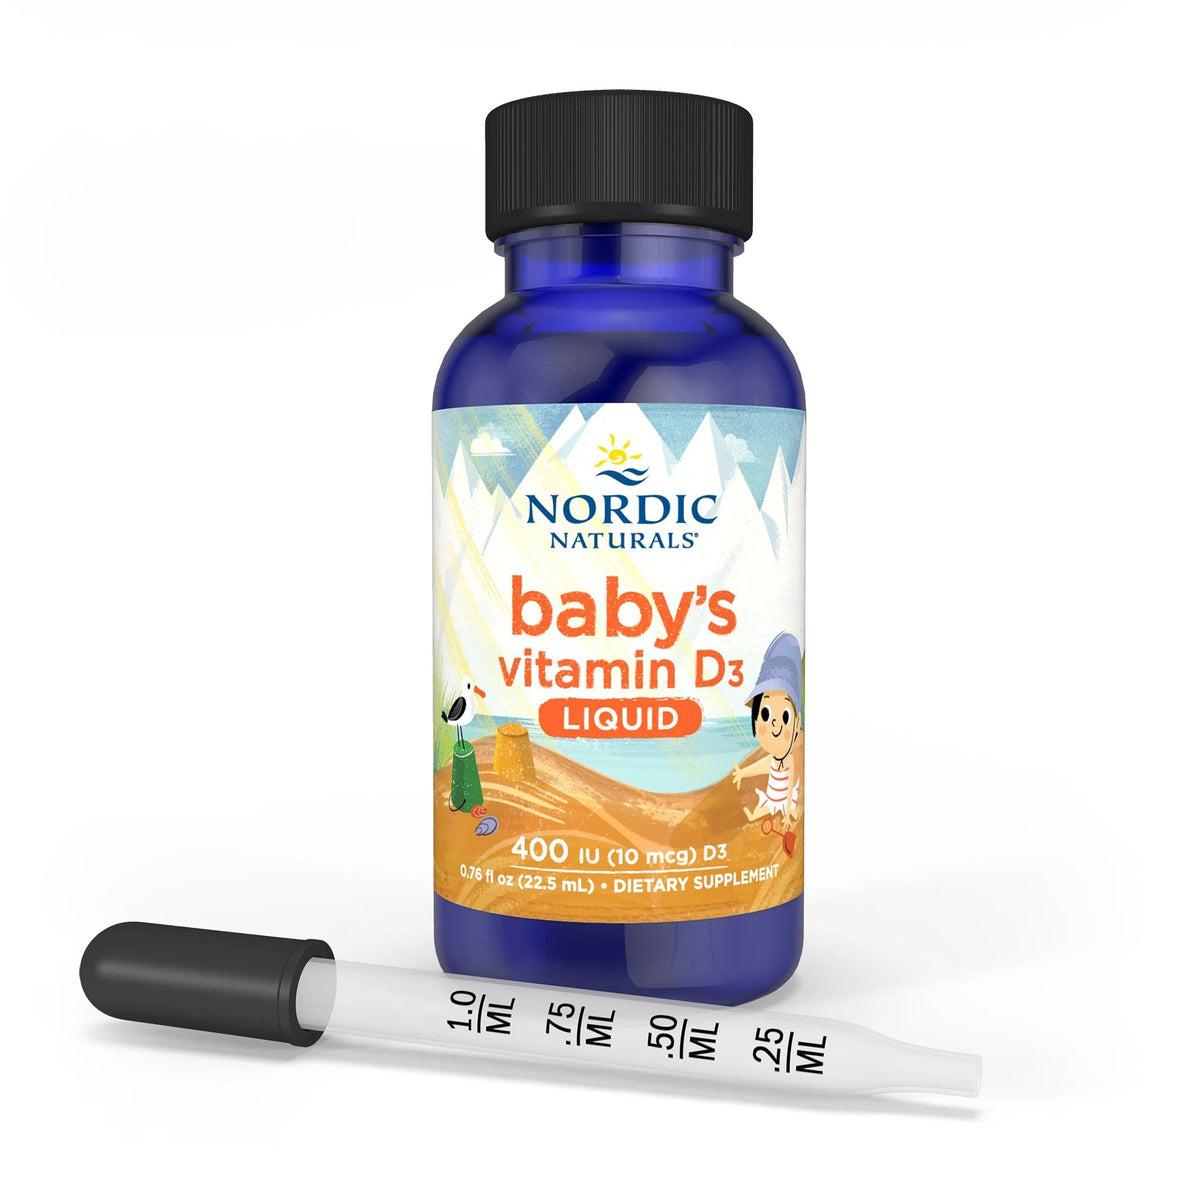 Nordic Naturals Baby&#39;s Vitamin D3 Liquid 0.76 oz Liquid